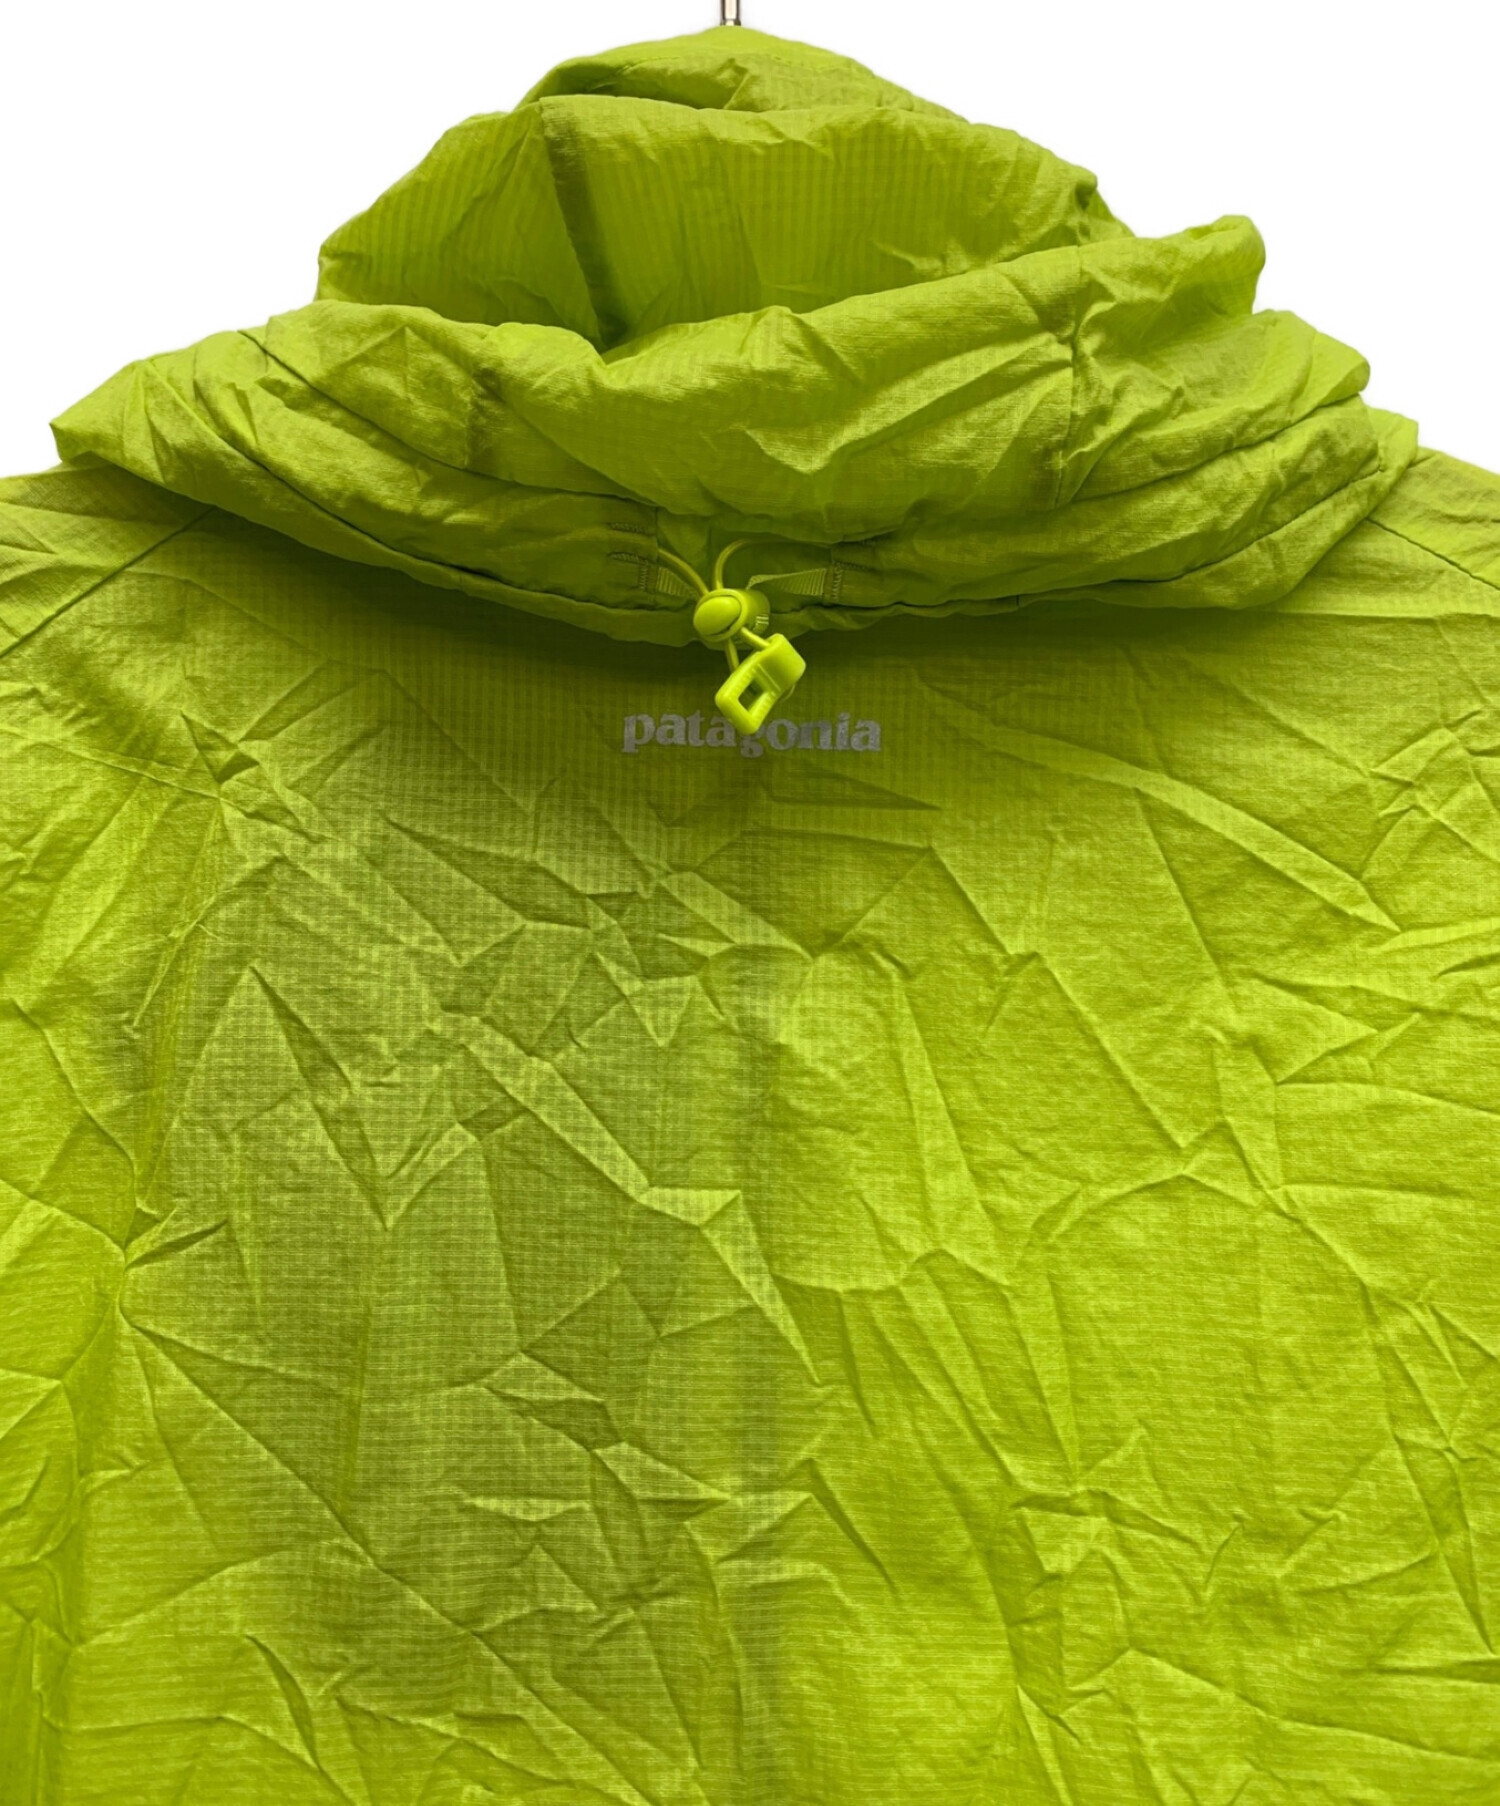 パタゴニア patagonia フーディニ ジャケット s 2015年製 黄緑